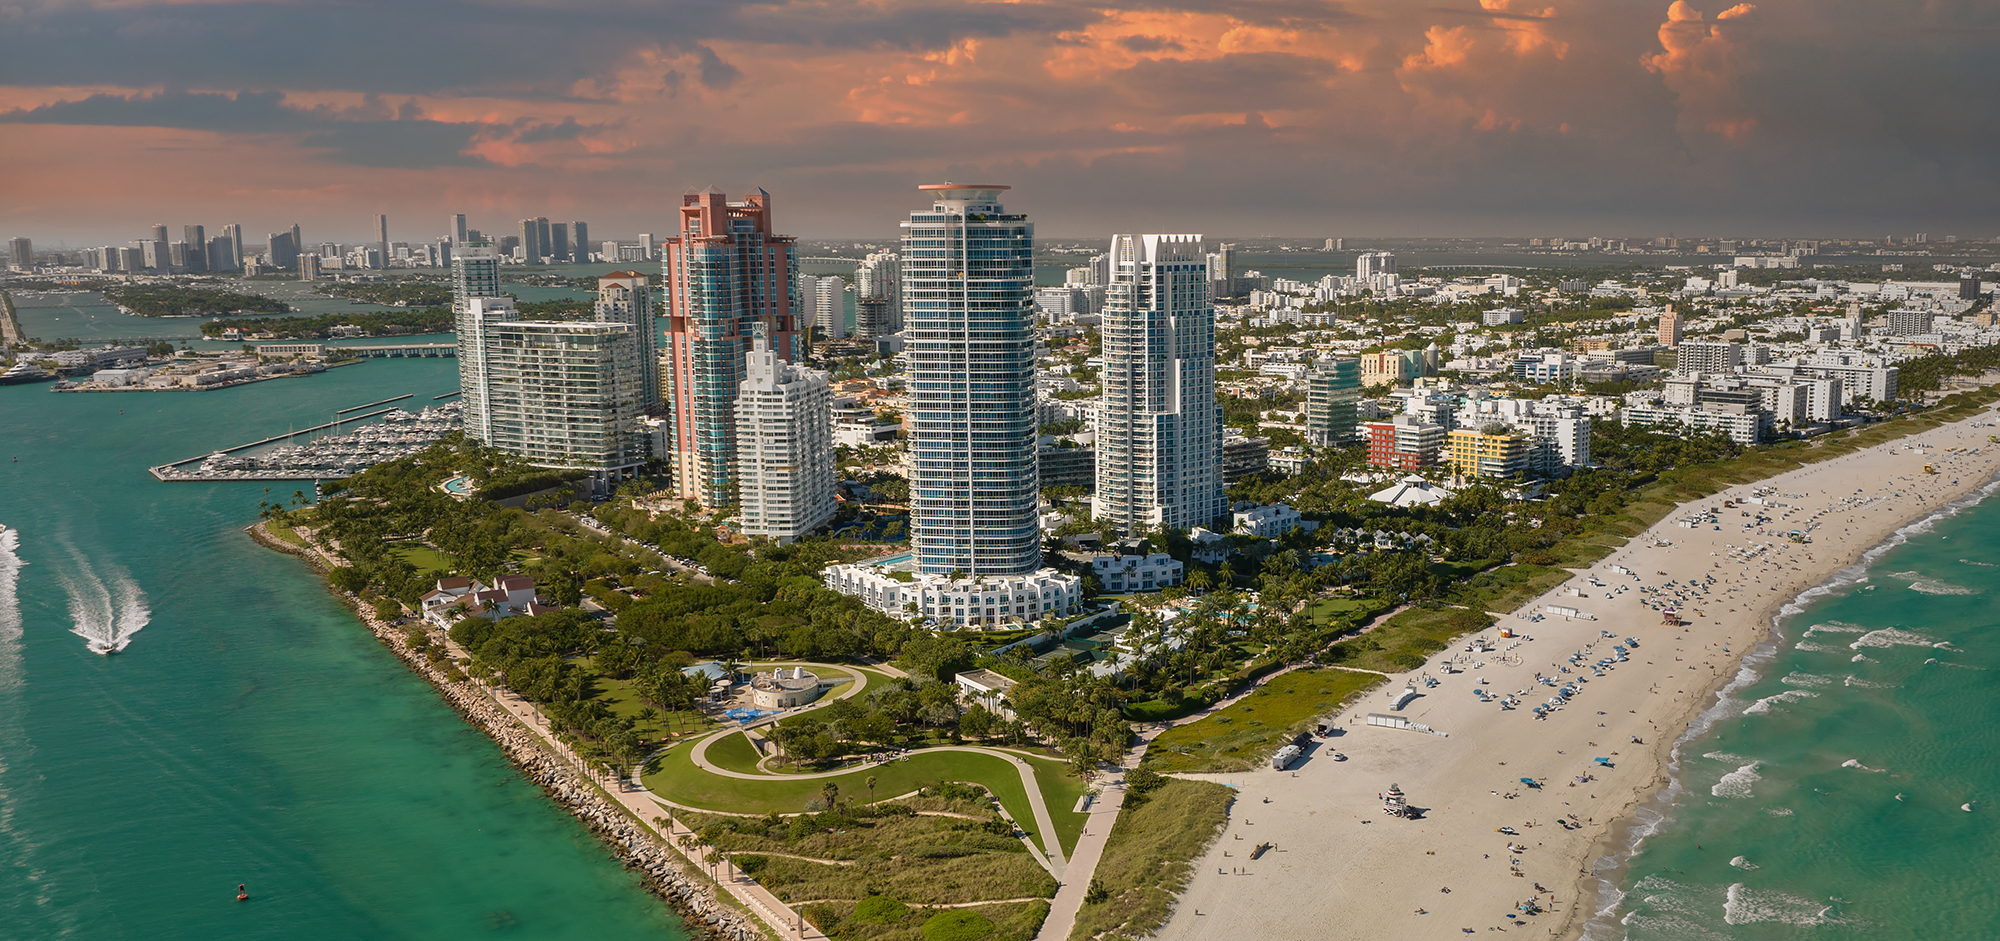 Photo of South Beach, Miami Beach